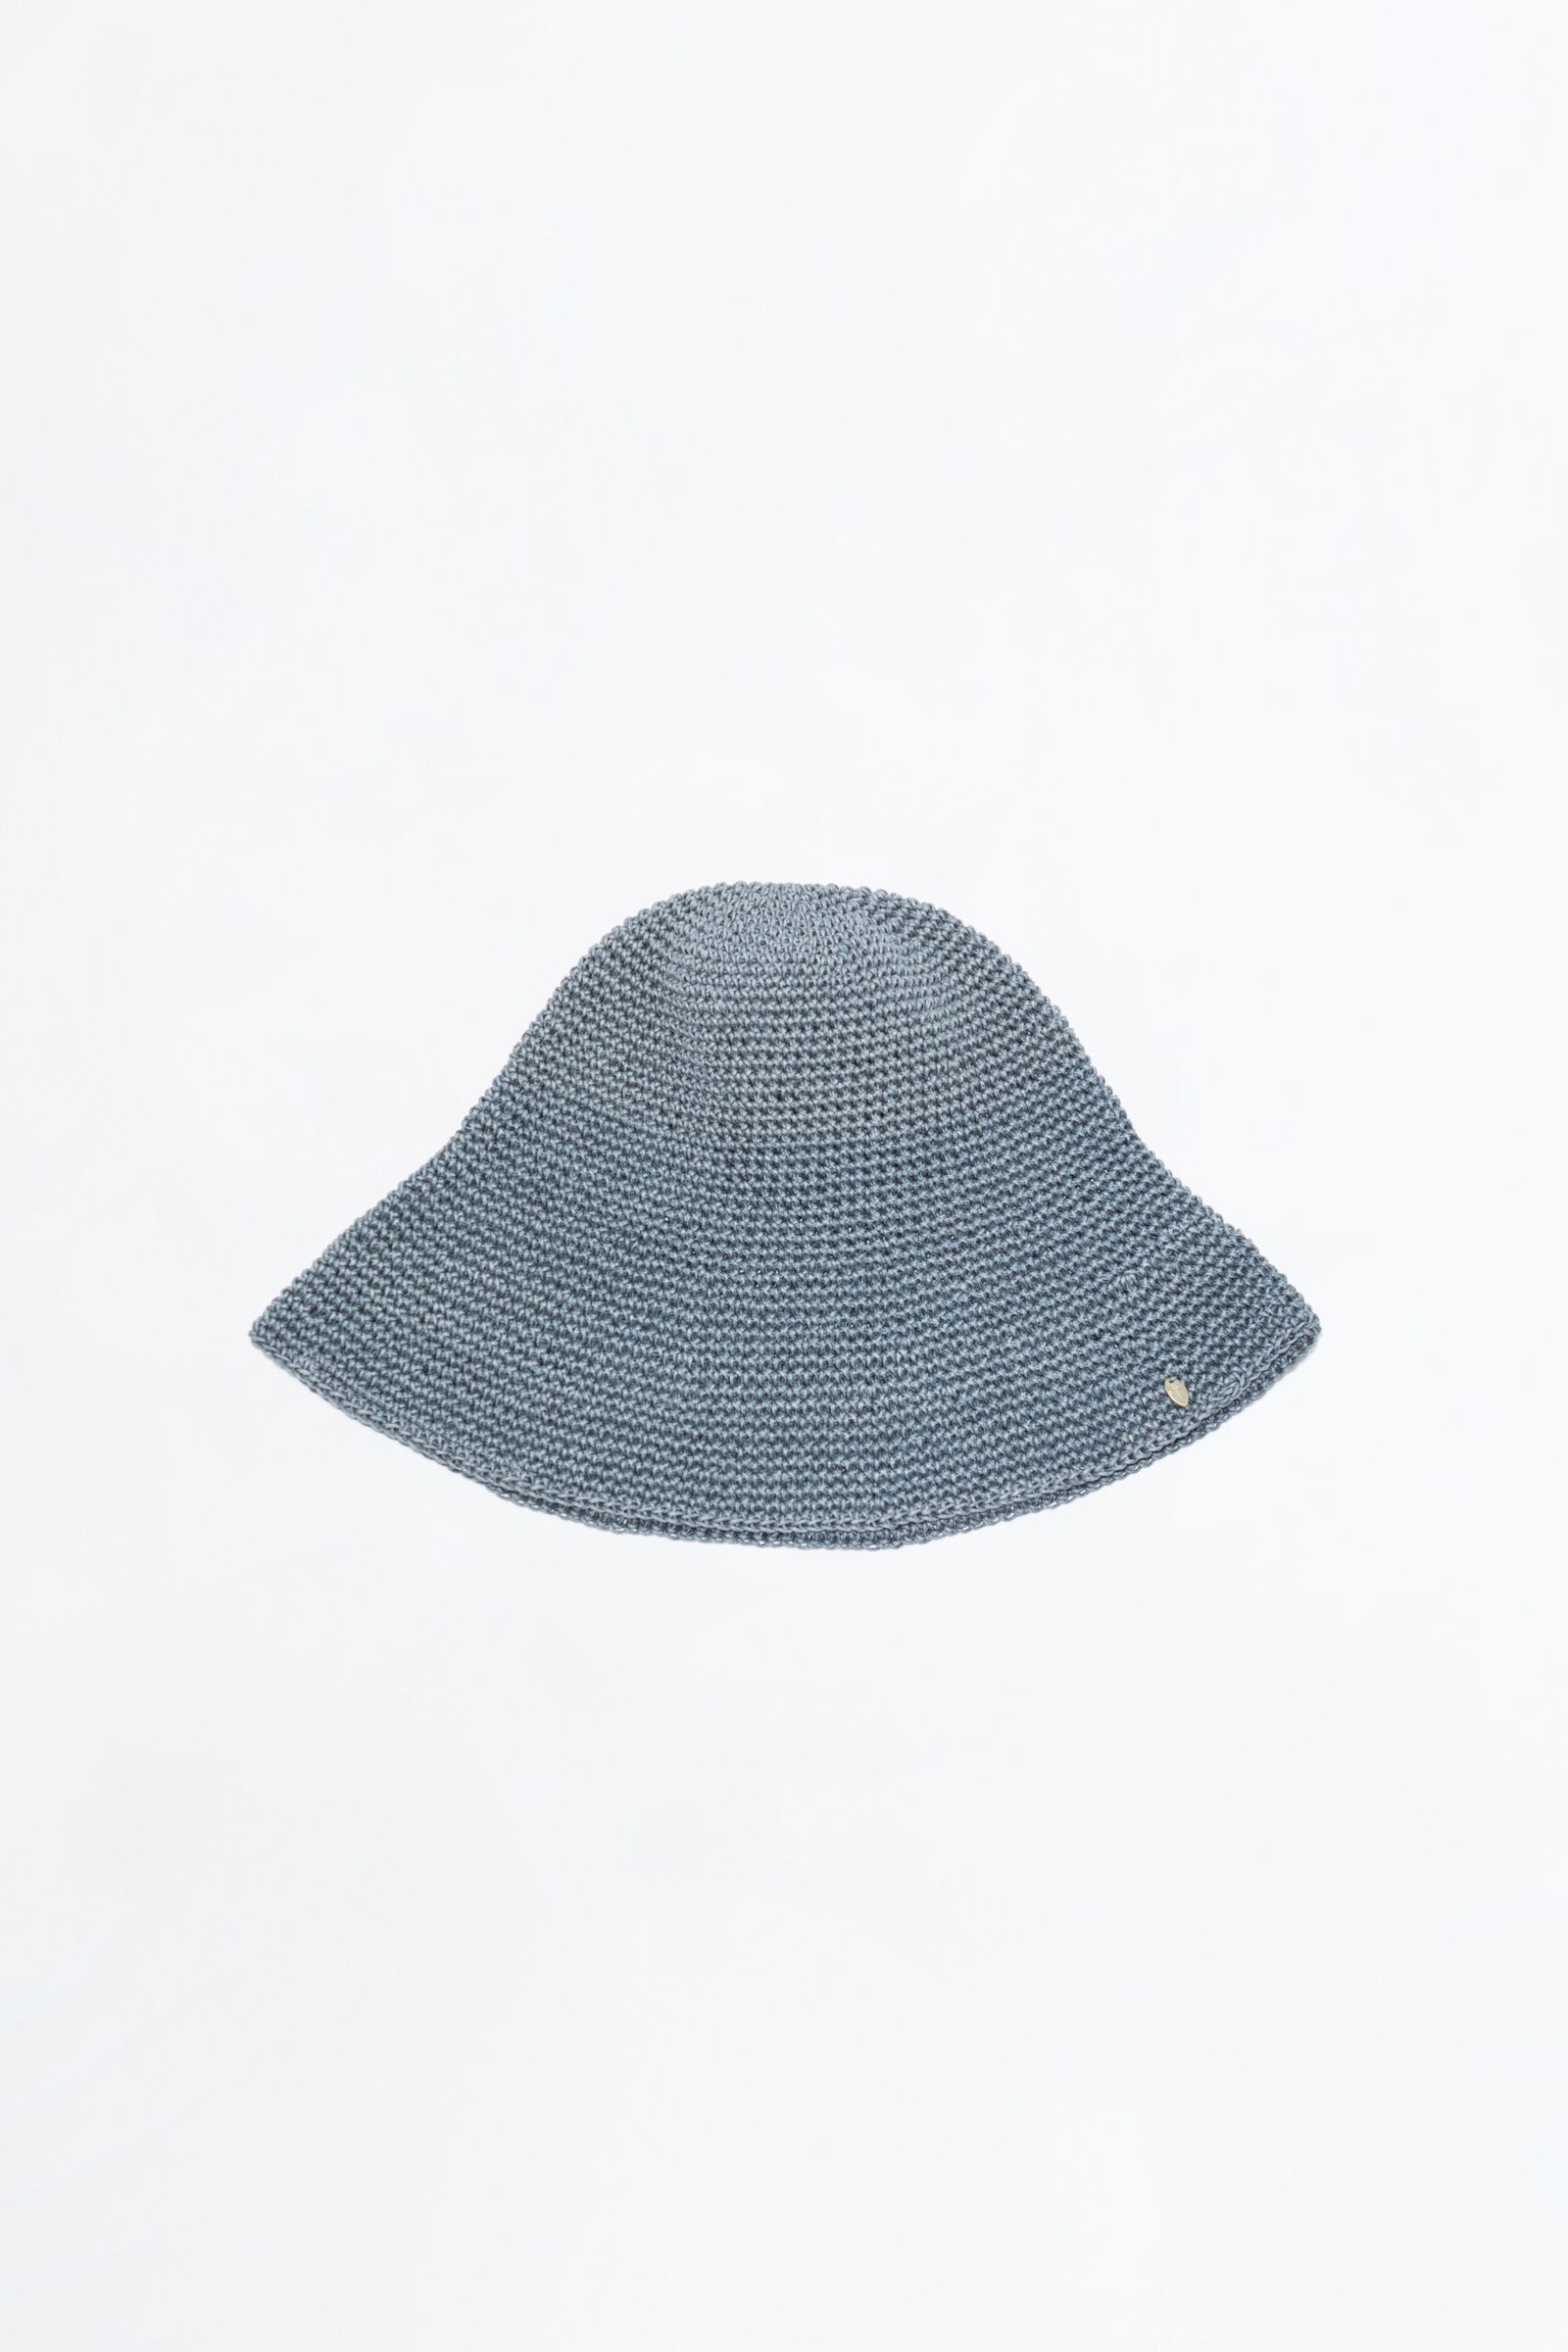 aynie-sombrero-pegual-gris